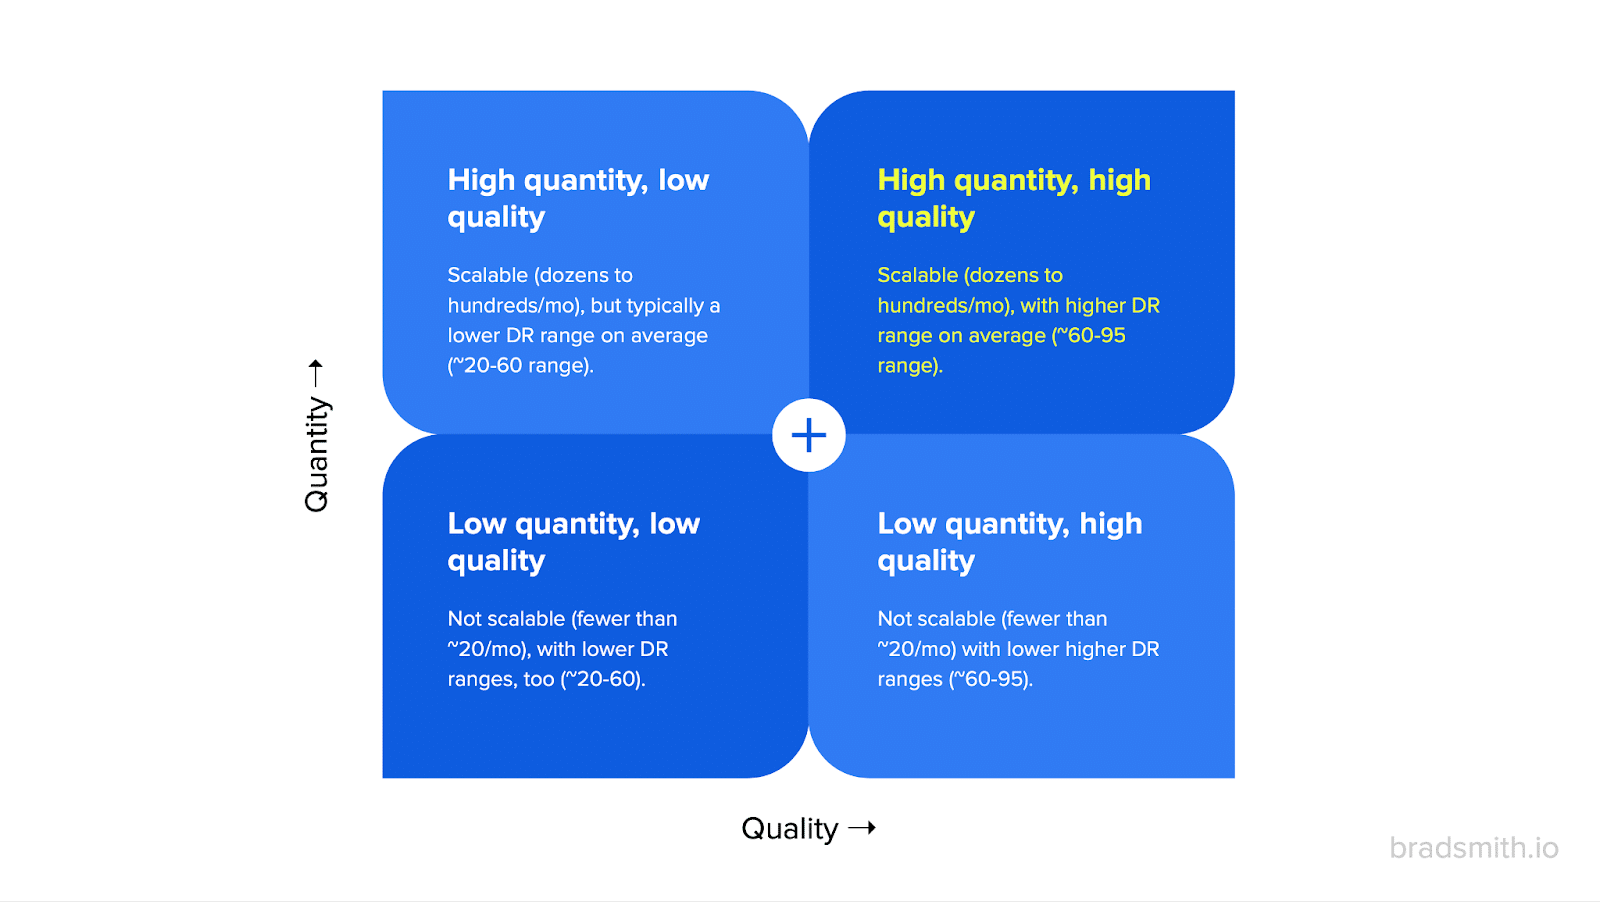 Links - high quantity, high quality